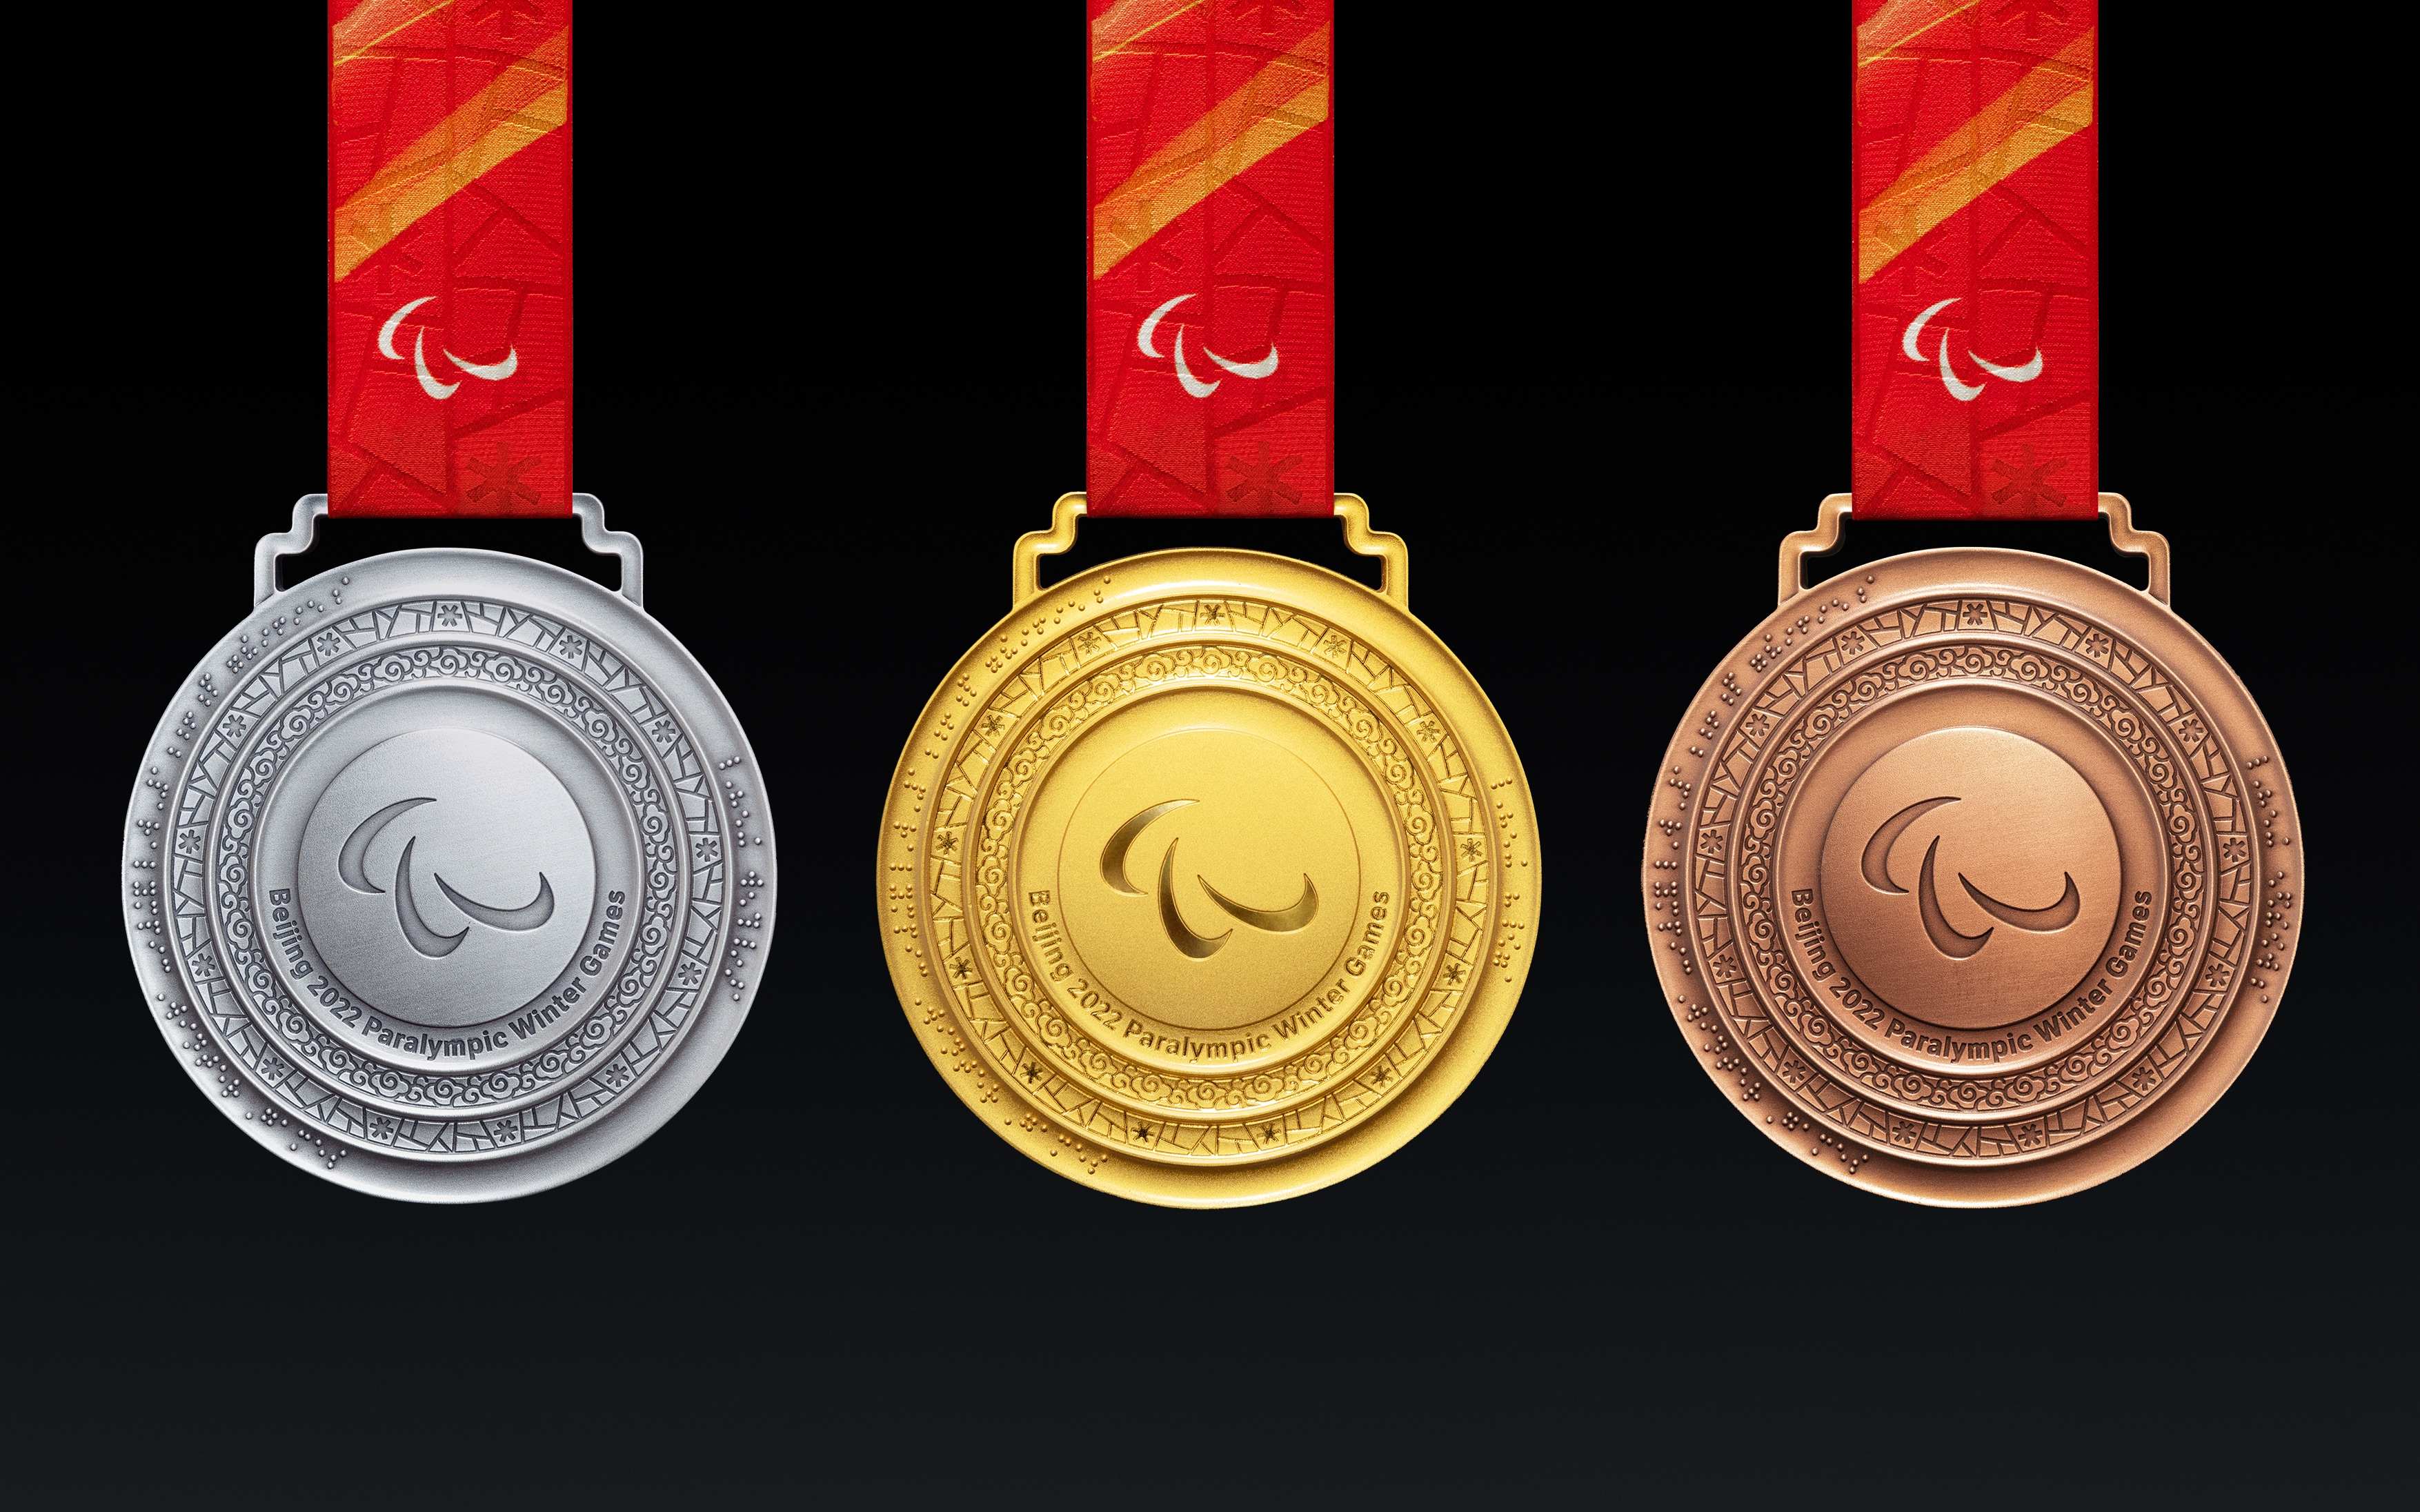 北京残奥会会徽中的三种颜色分别代表什么?